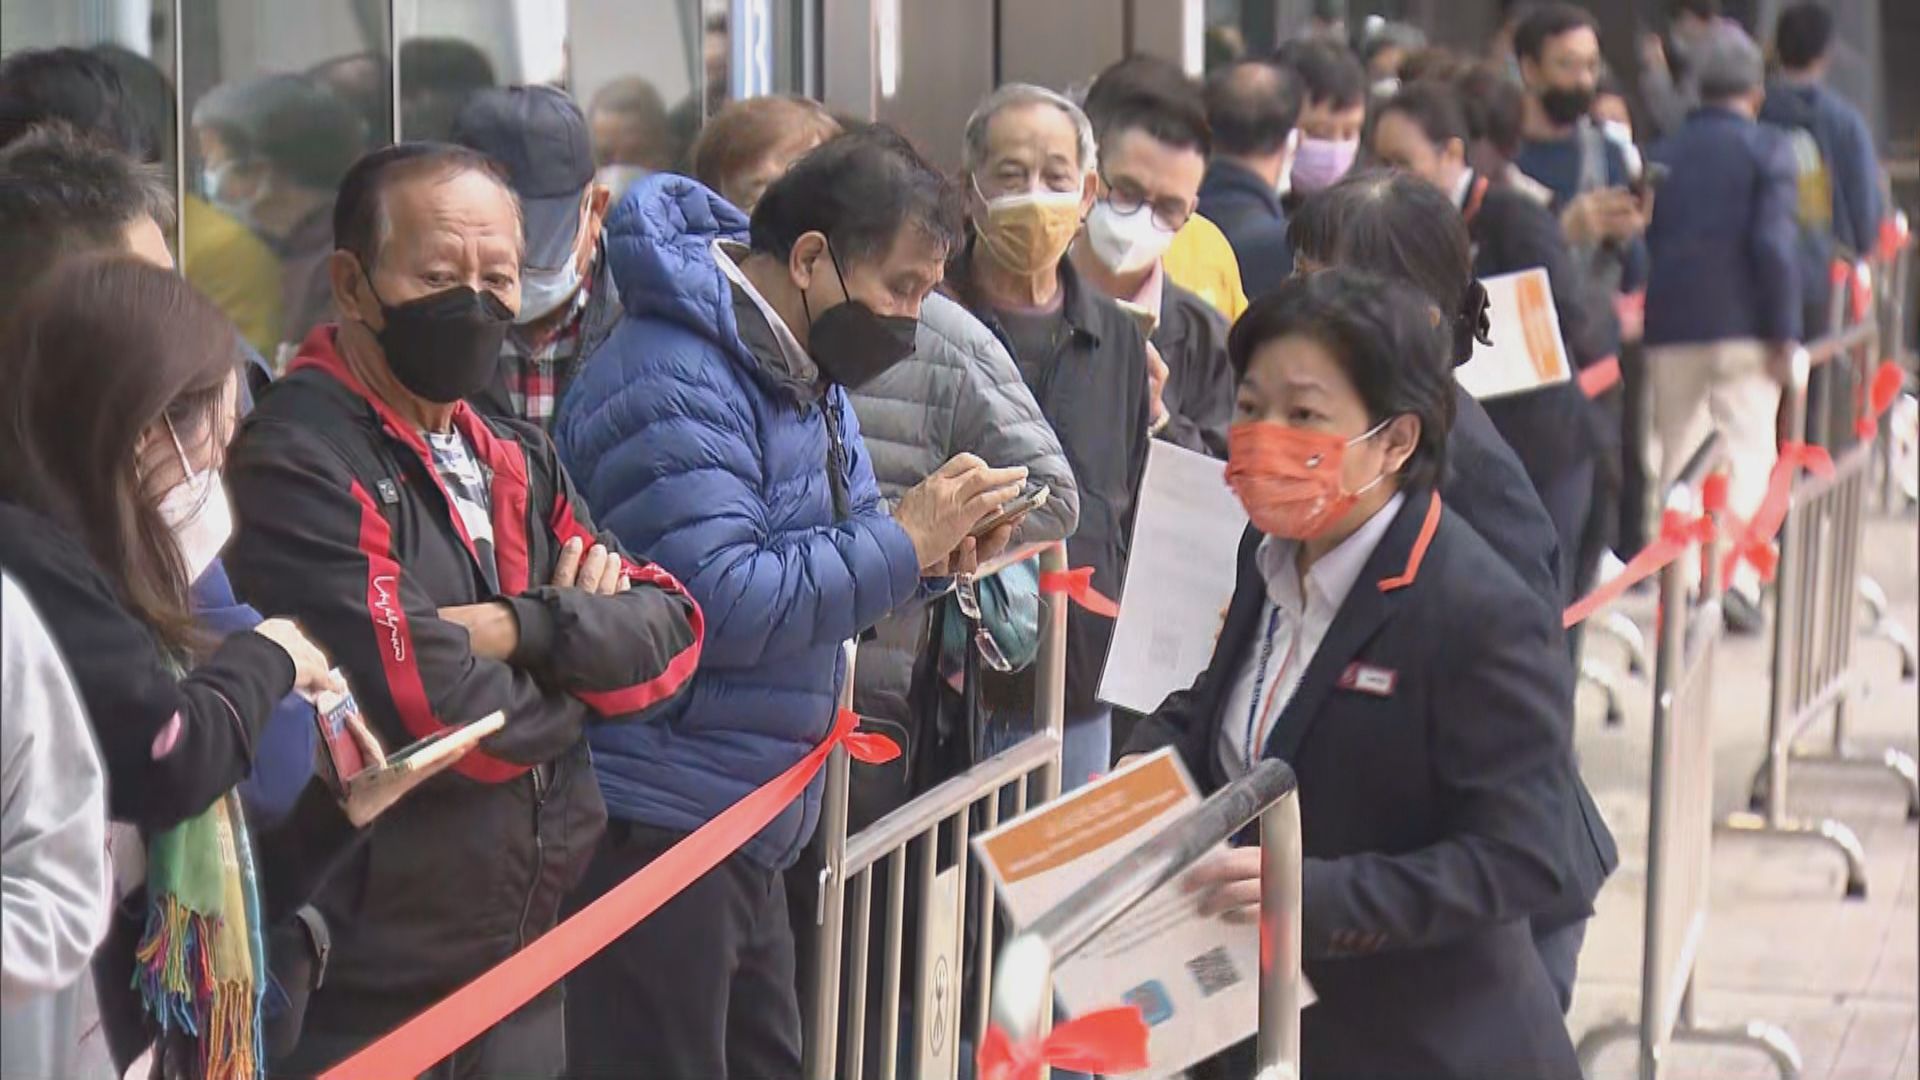 香港西九龍站下午開售高鐵車票　有過百名市民排隊